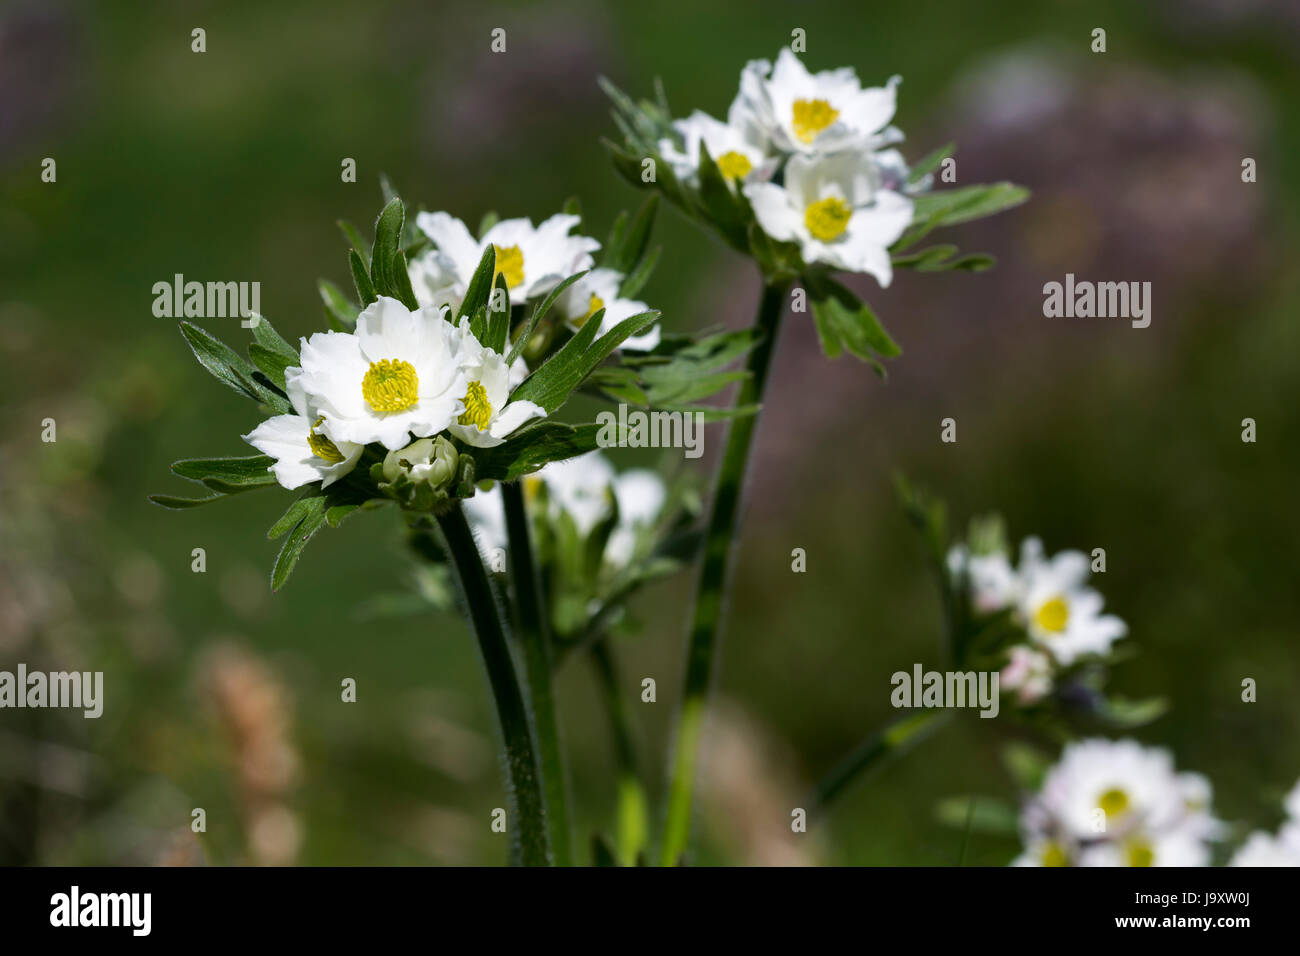 Bloom, s'épanouir, de s'épanouir et florissante, pâle, lumineux, blanc pur, blanc de neige, Banque D'Images